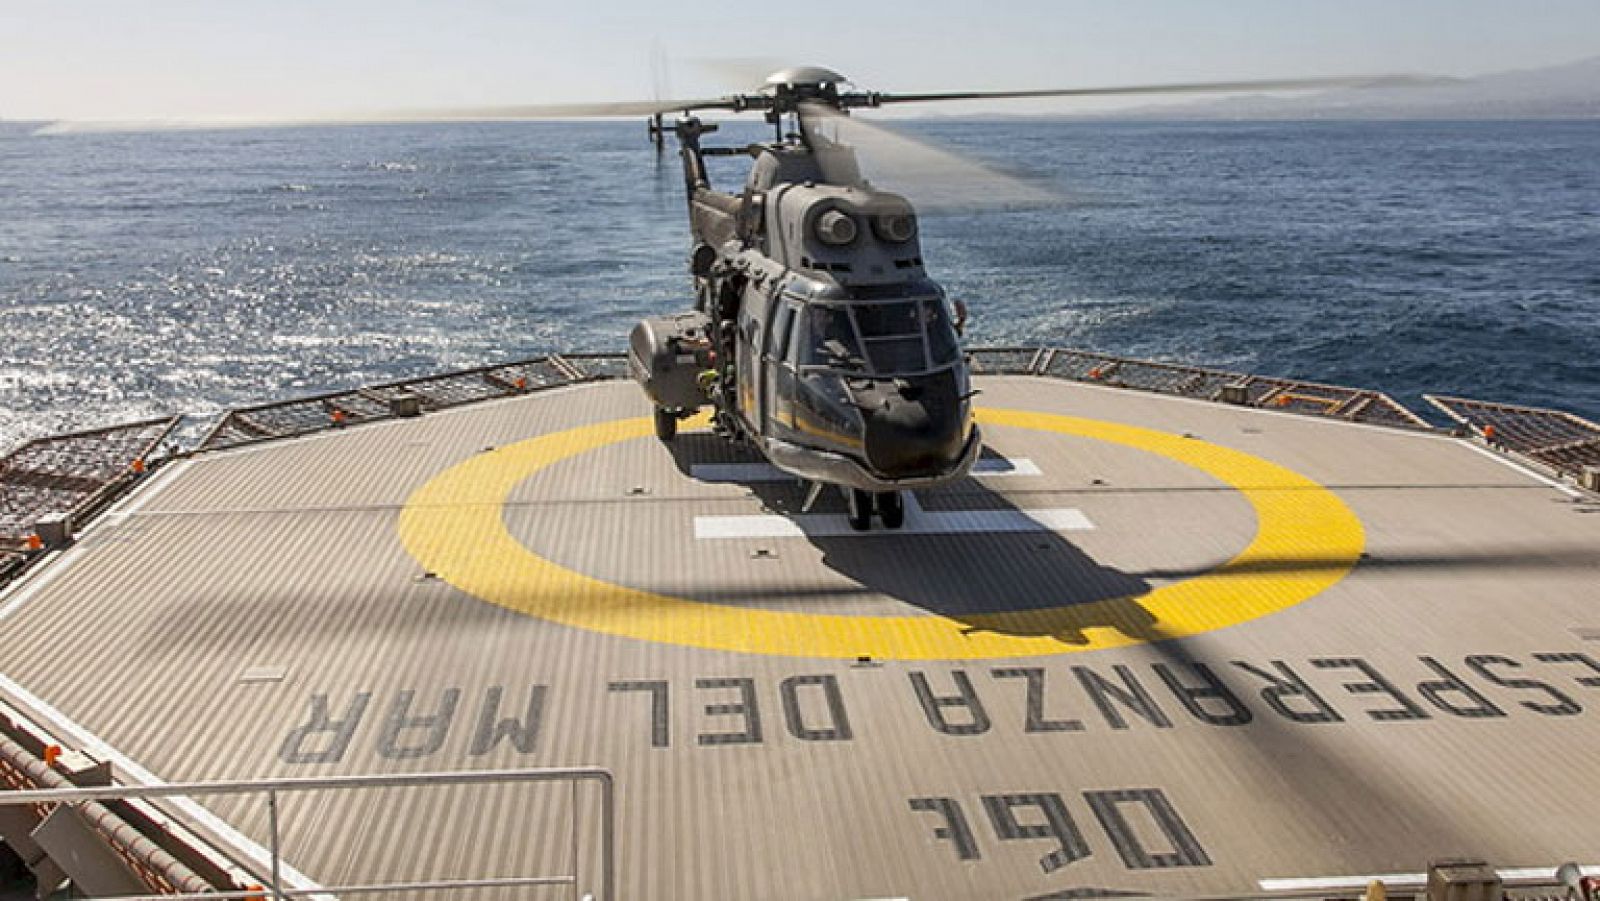 Continúa la búsqueda de los militares desaparecidos tras un accidente de helicóptero en Canarias 